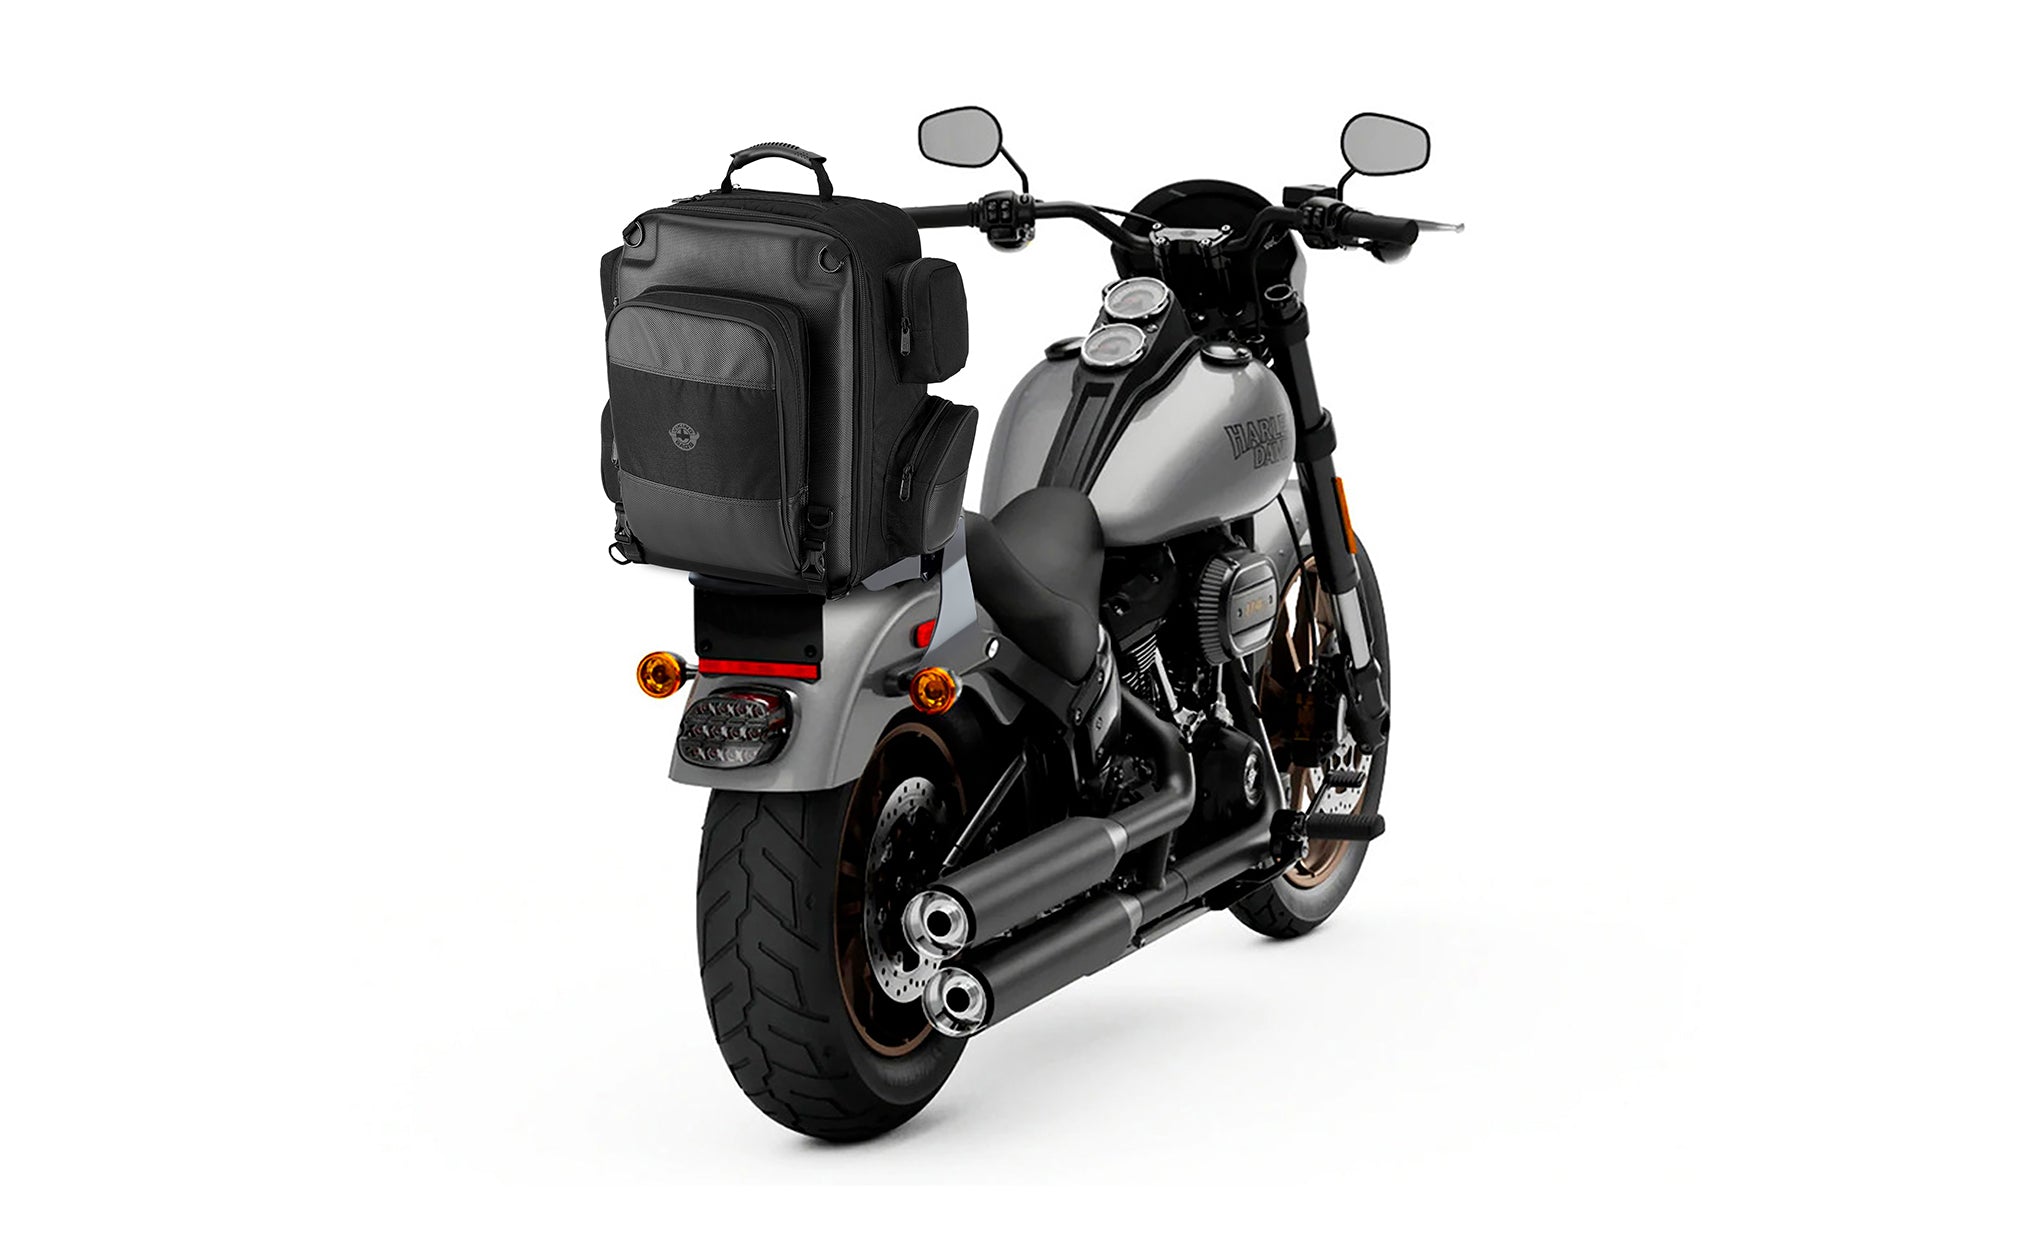 Viking Voyage Large Suzuki Motorcycle Backpack Bag on Bike View @expand